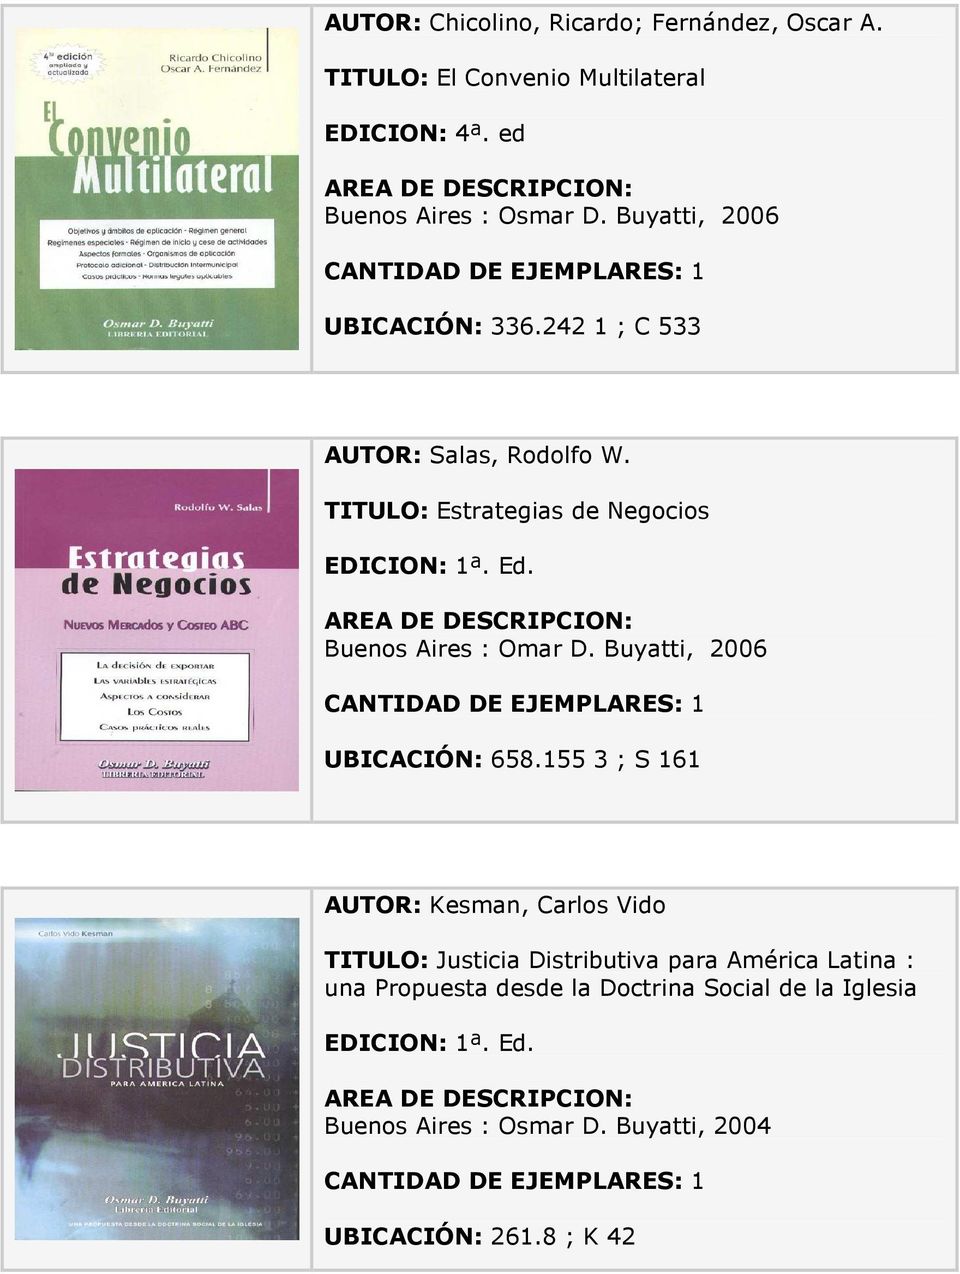 TITULO: Estrategias de Negocios Buenos Aires : Omar D. Buyatti, 2006 UBICACIÓN: 658.